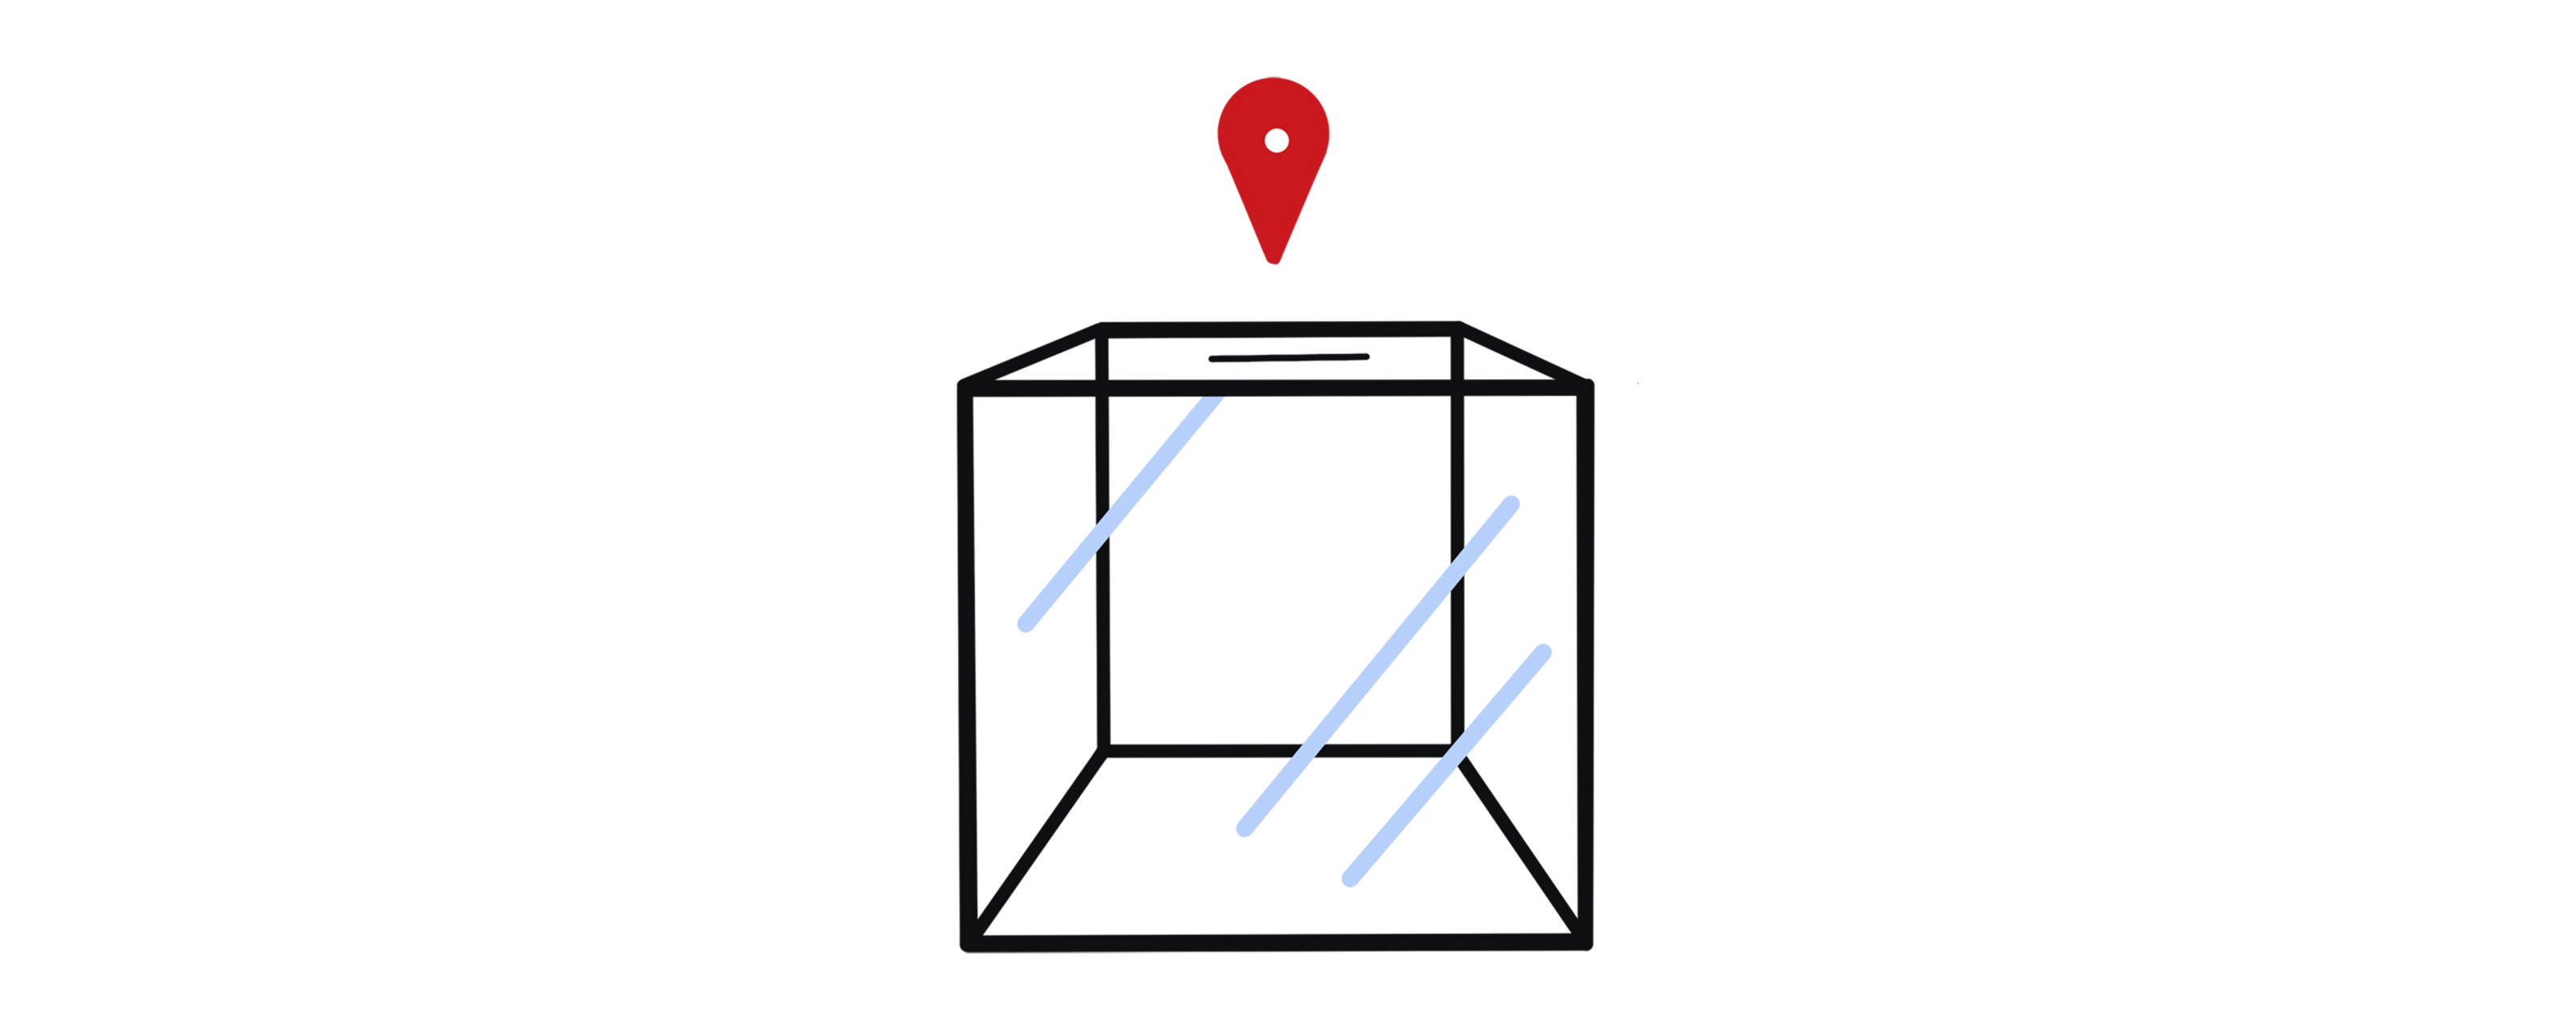 Infographie représentant une urne de vote et un point rouge au-dessus de l'endroit où glisser l'enveloppe